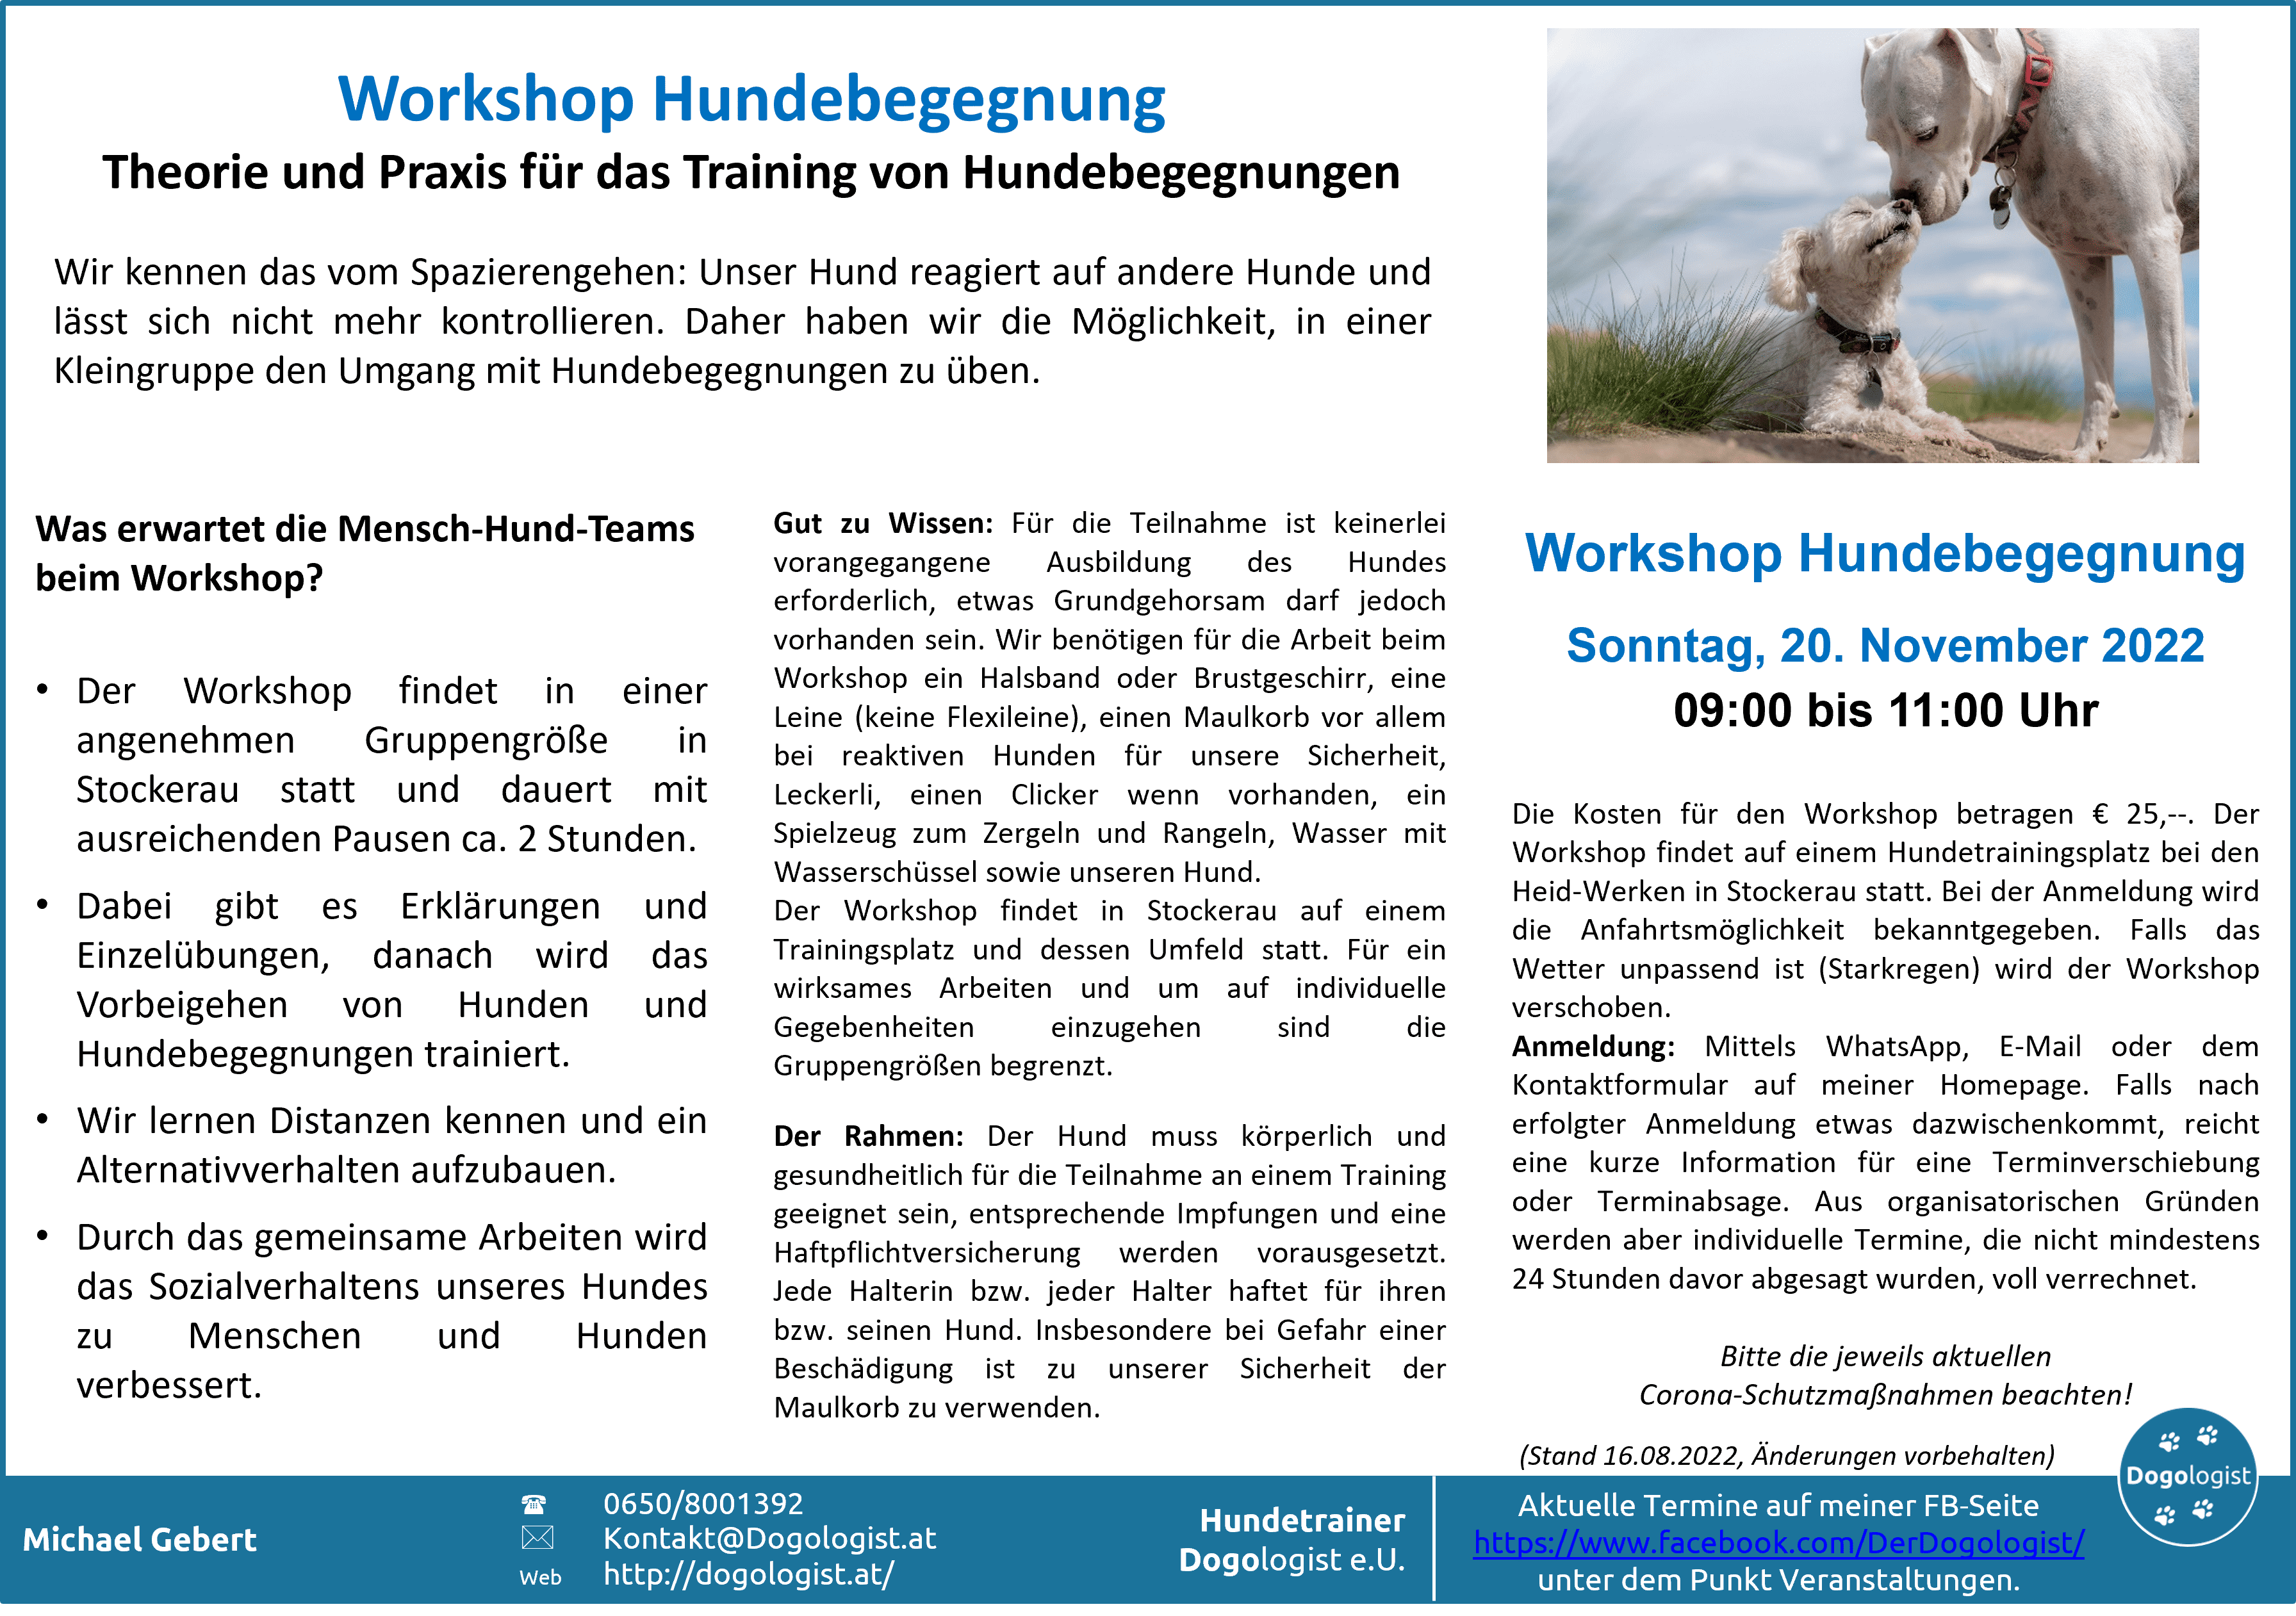 Workshop Hundebegegnung am Sonntag, dem 20. November 2022